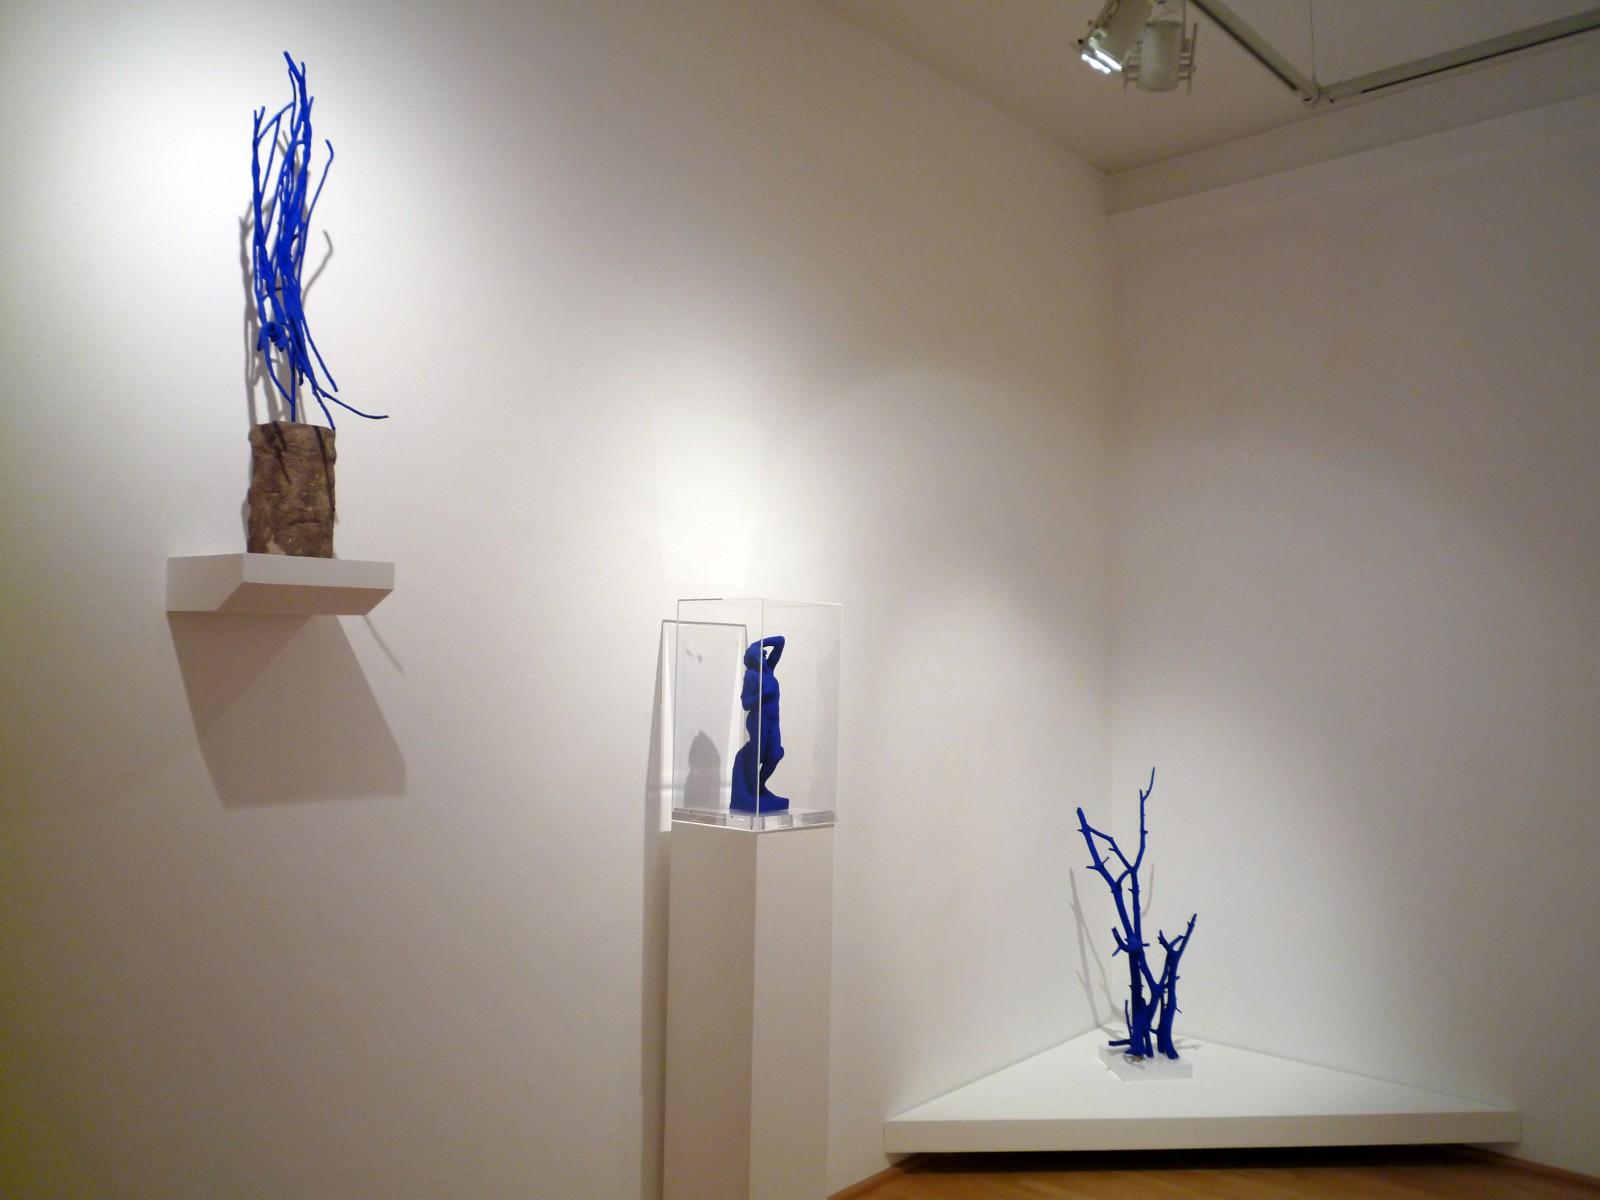 Vue de l'exposition "Yves Klein & Rotraut", Museo Cantonale d'Arte e il Museo d'Arte della città di Lugano, 2009